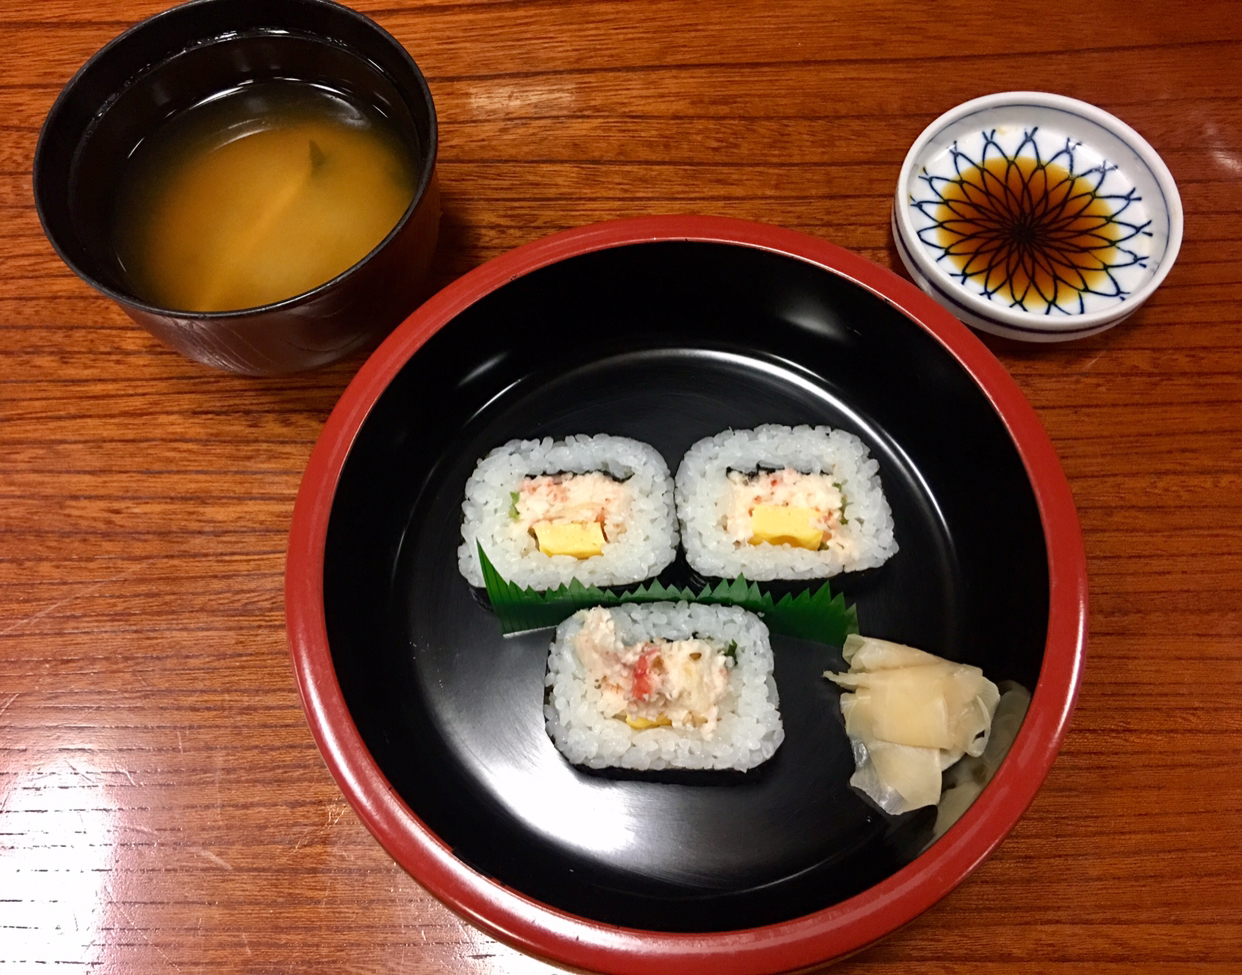 除了寿司 日本还有什么推荐一吃的菜品 马蜂窝